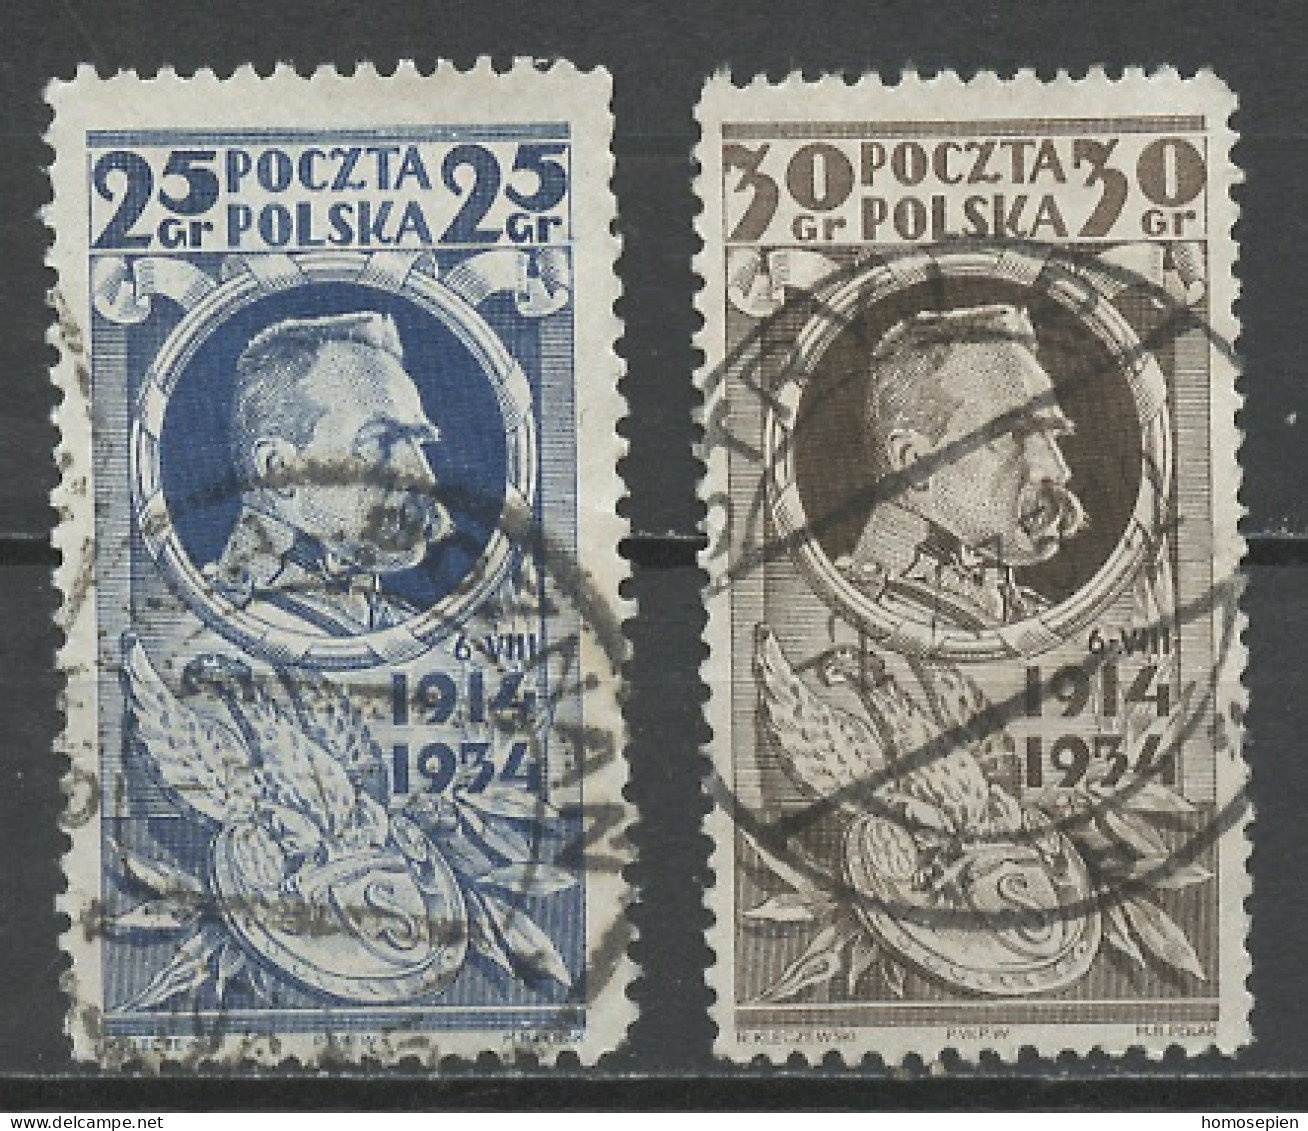 Pologne - Poland - Polen 1934 Y&T N°369 à 370 - Michel N°287 à 288 (o) - Légion Polonaise - Used Stamps